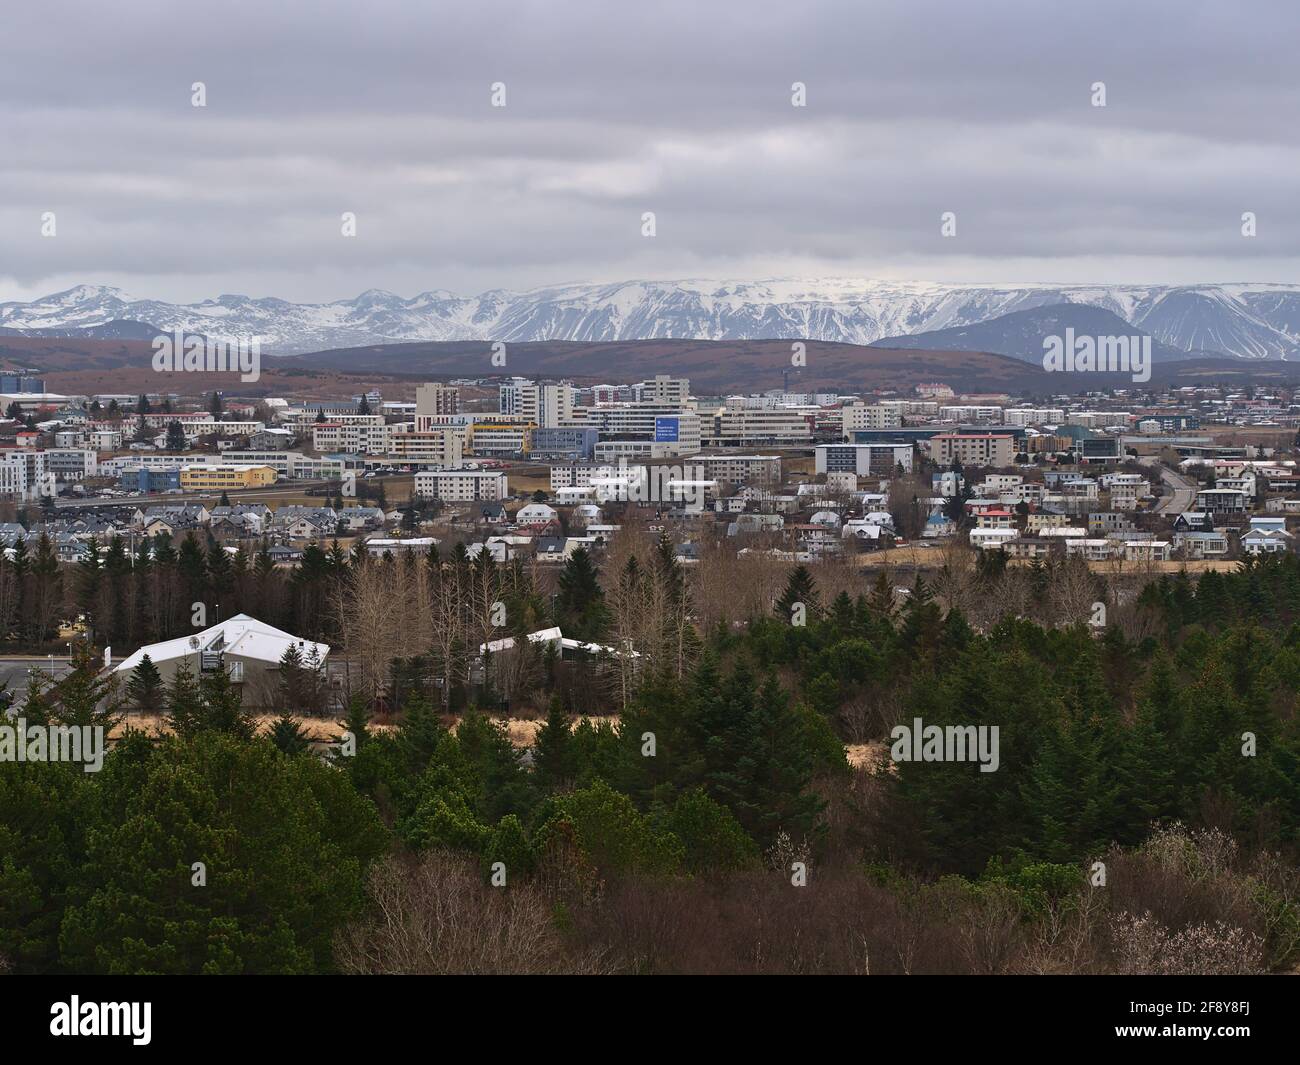 Vista aerea della parte orientale di Reykjavik, capitale dell'Islanda, con una piccola foresta, edifici e montagne innevate e aspre in un giorno nuvoloso. Foto Stock